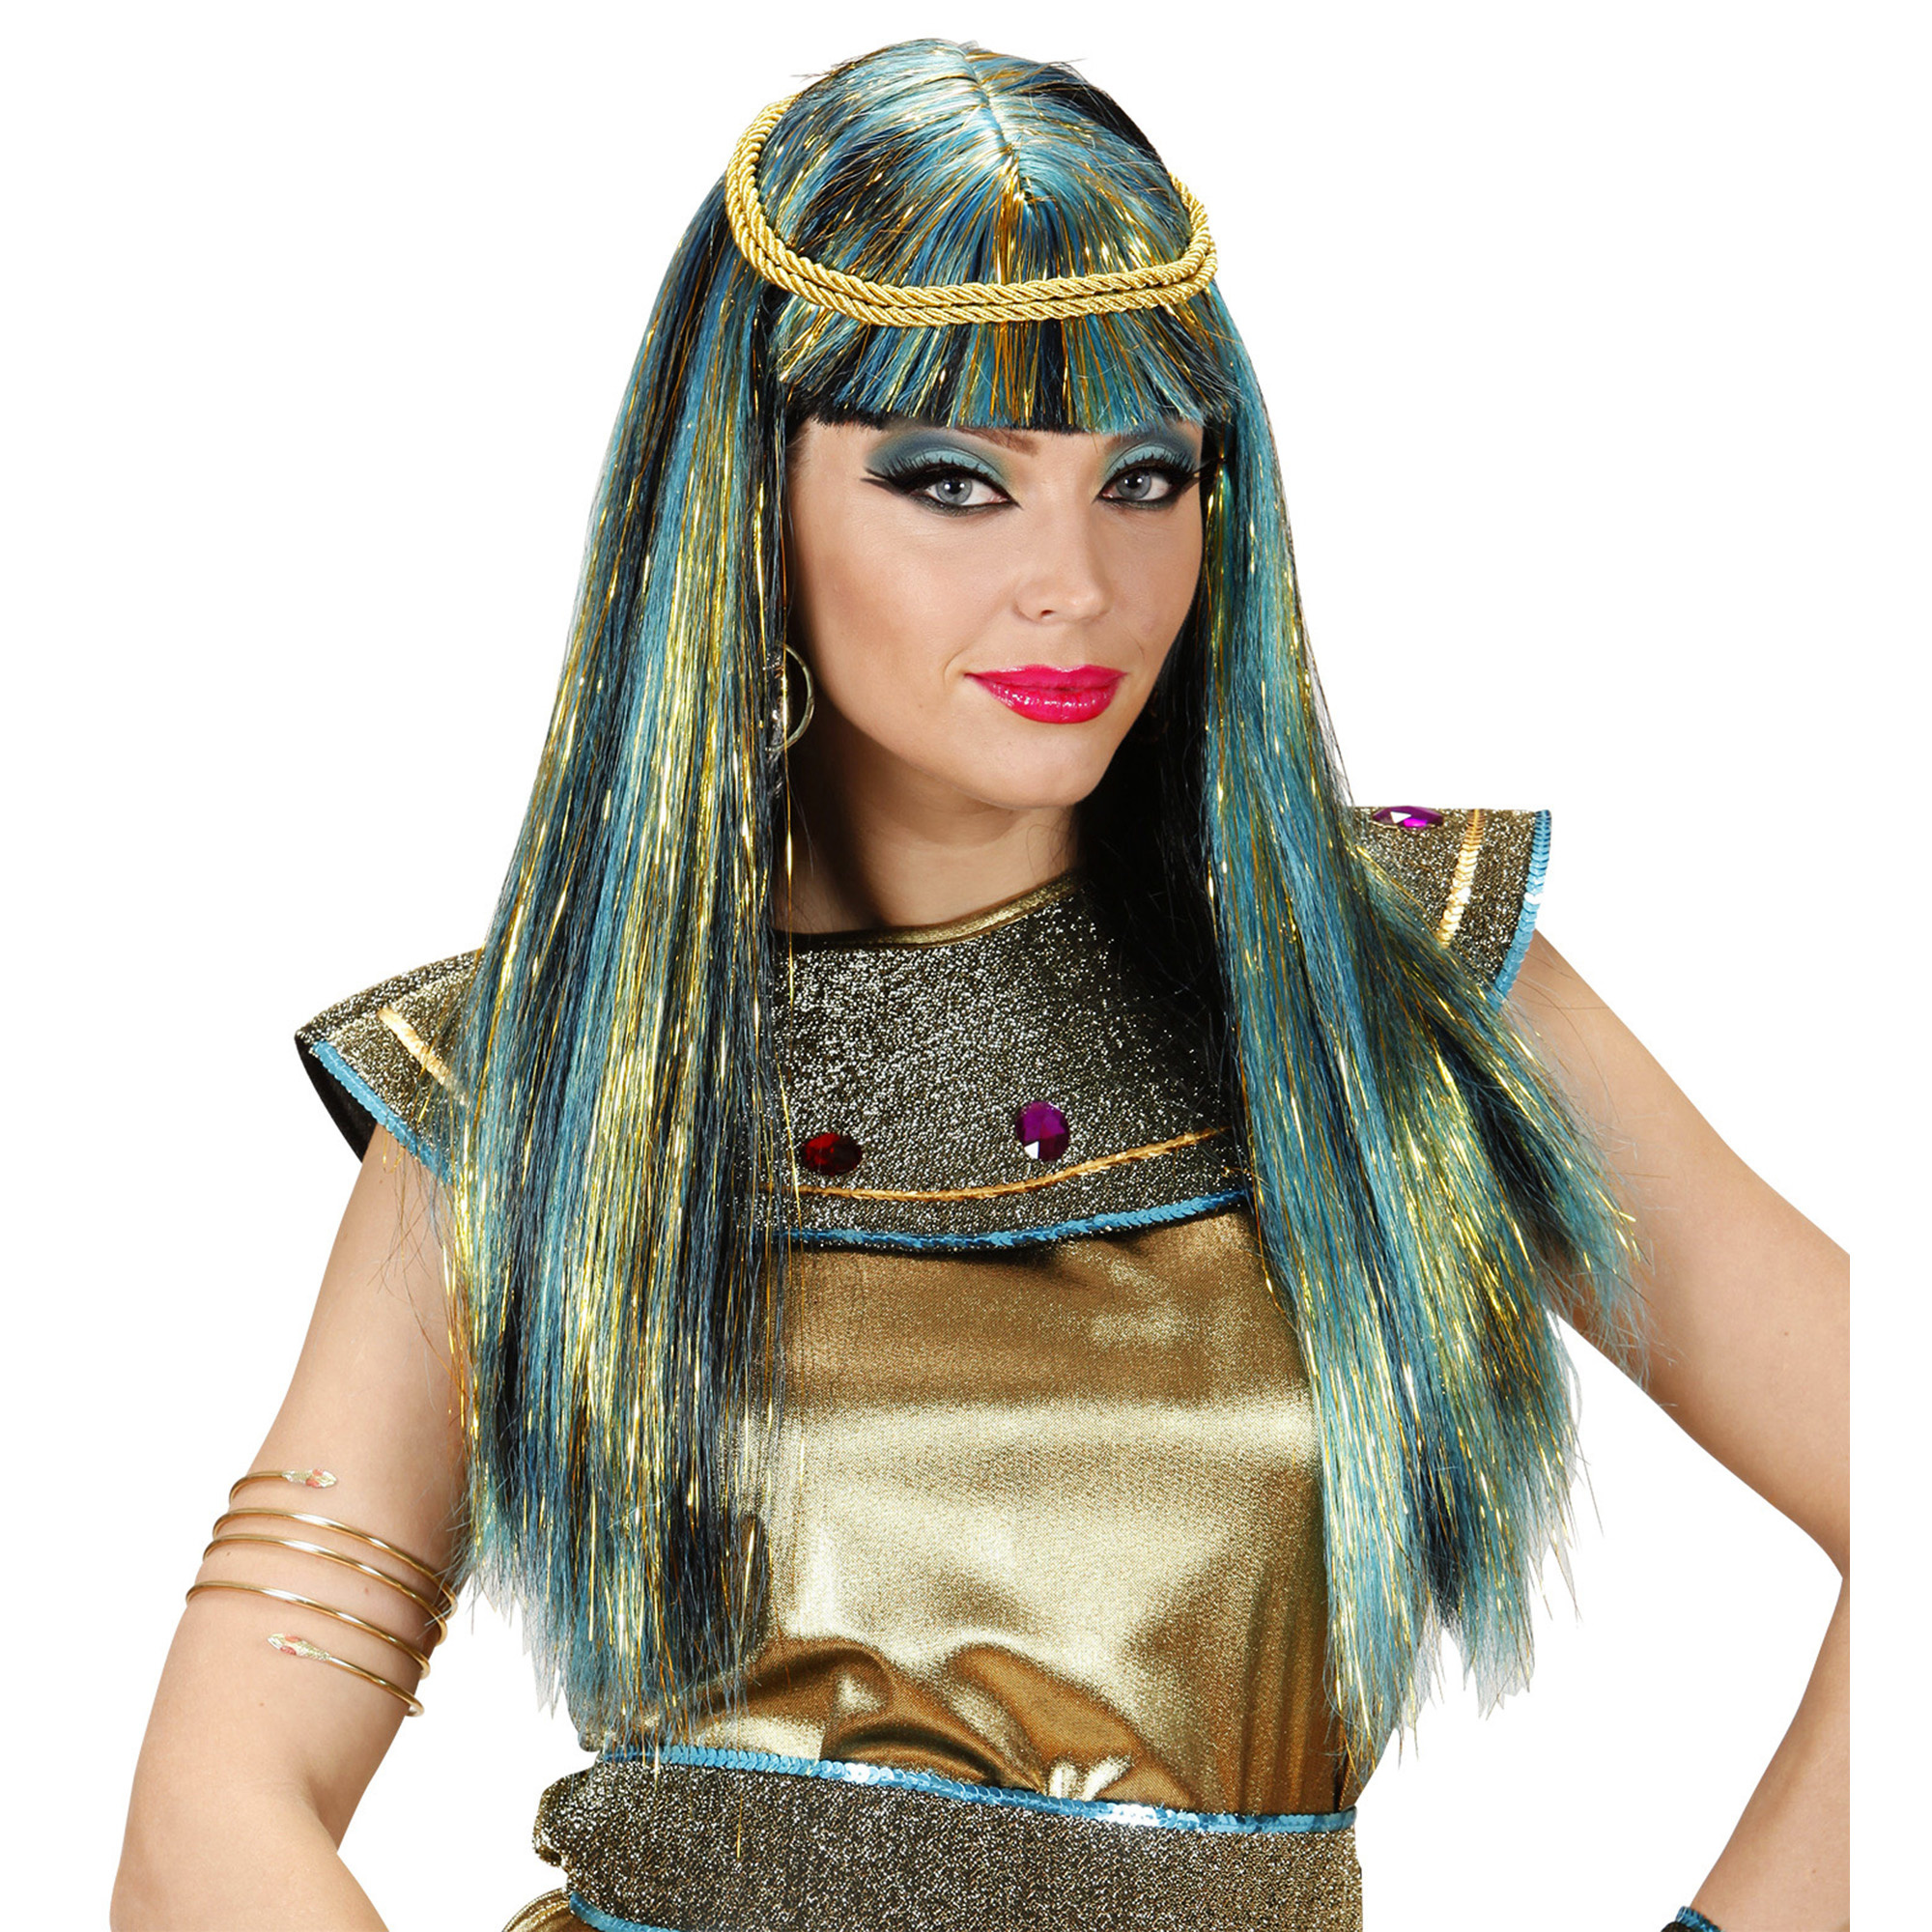 Carnavalspruik: Cleopatra pruik voor carnaval